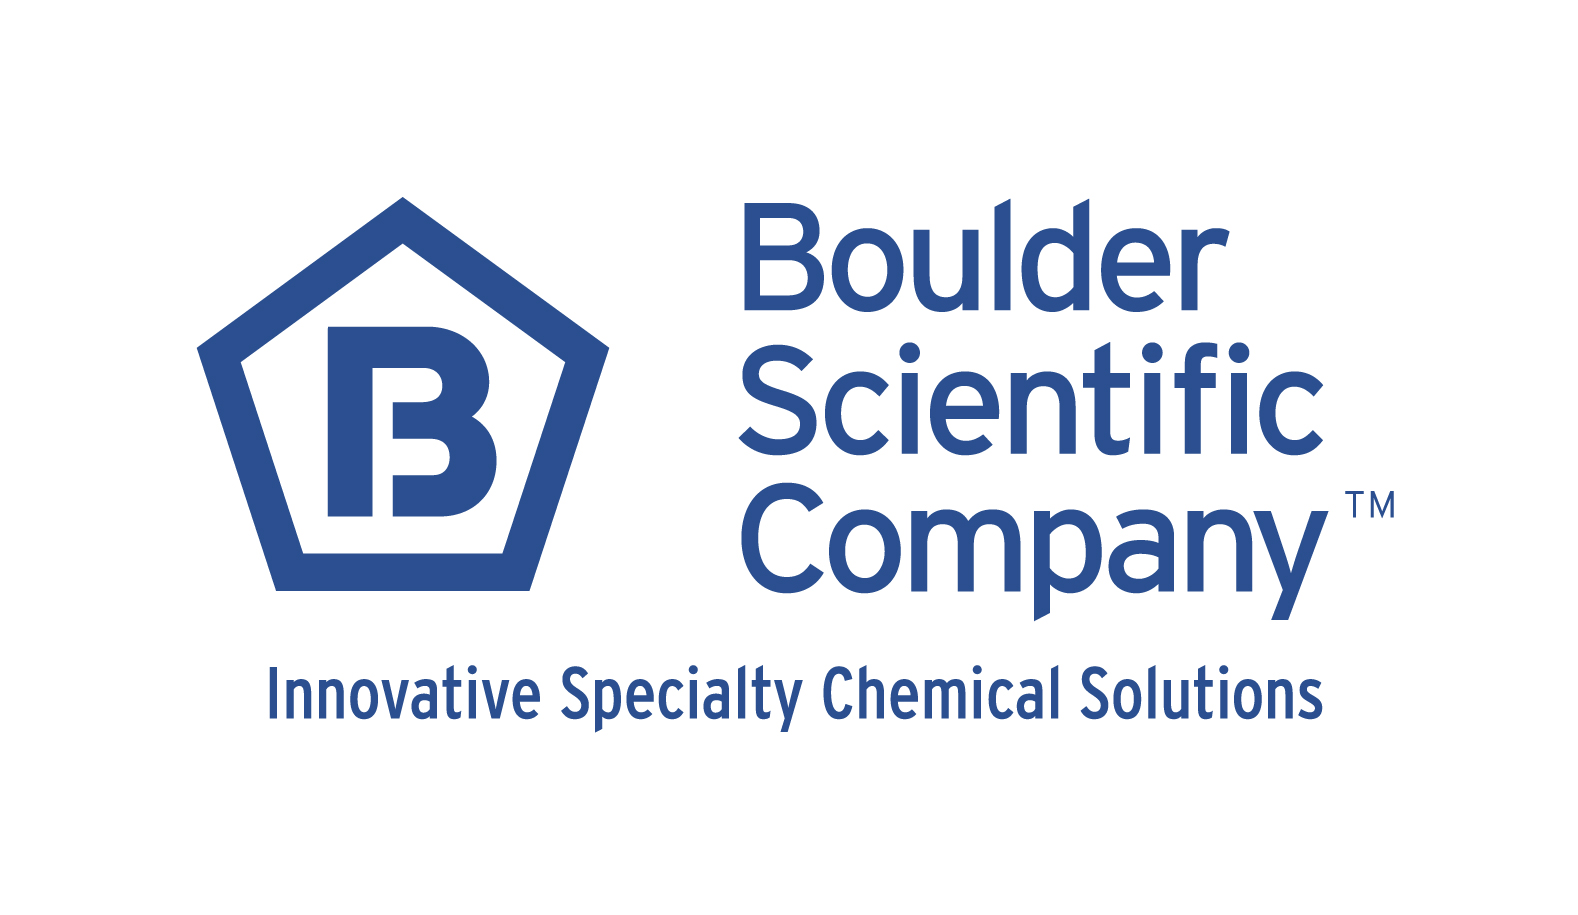 Quad-C Announces Investment in Boulder Scientific Company